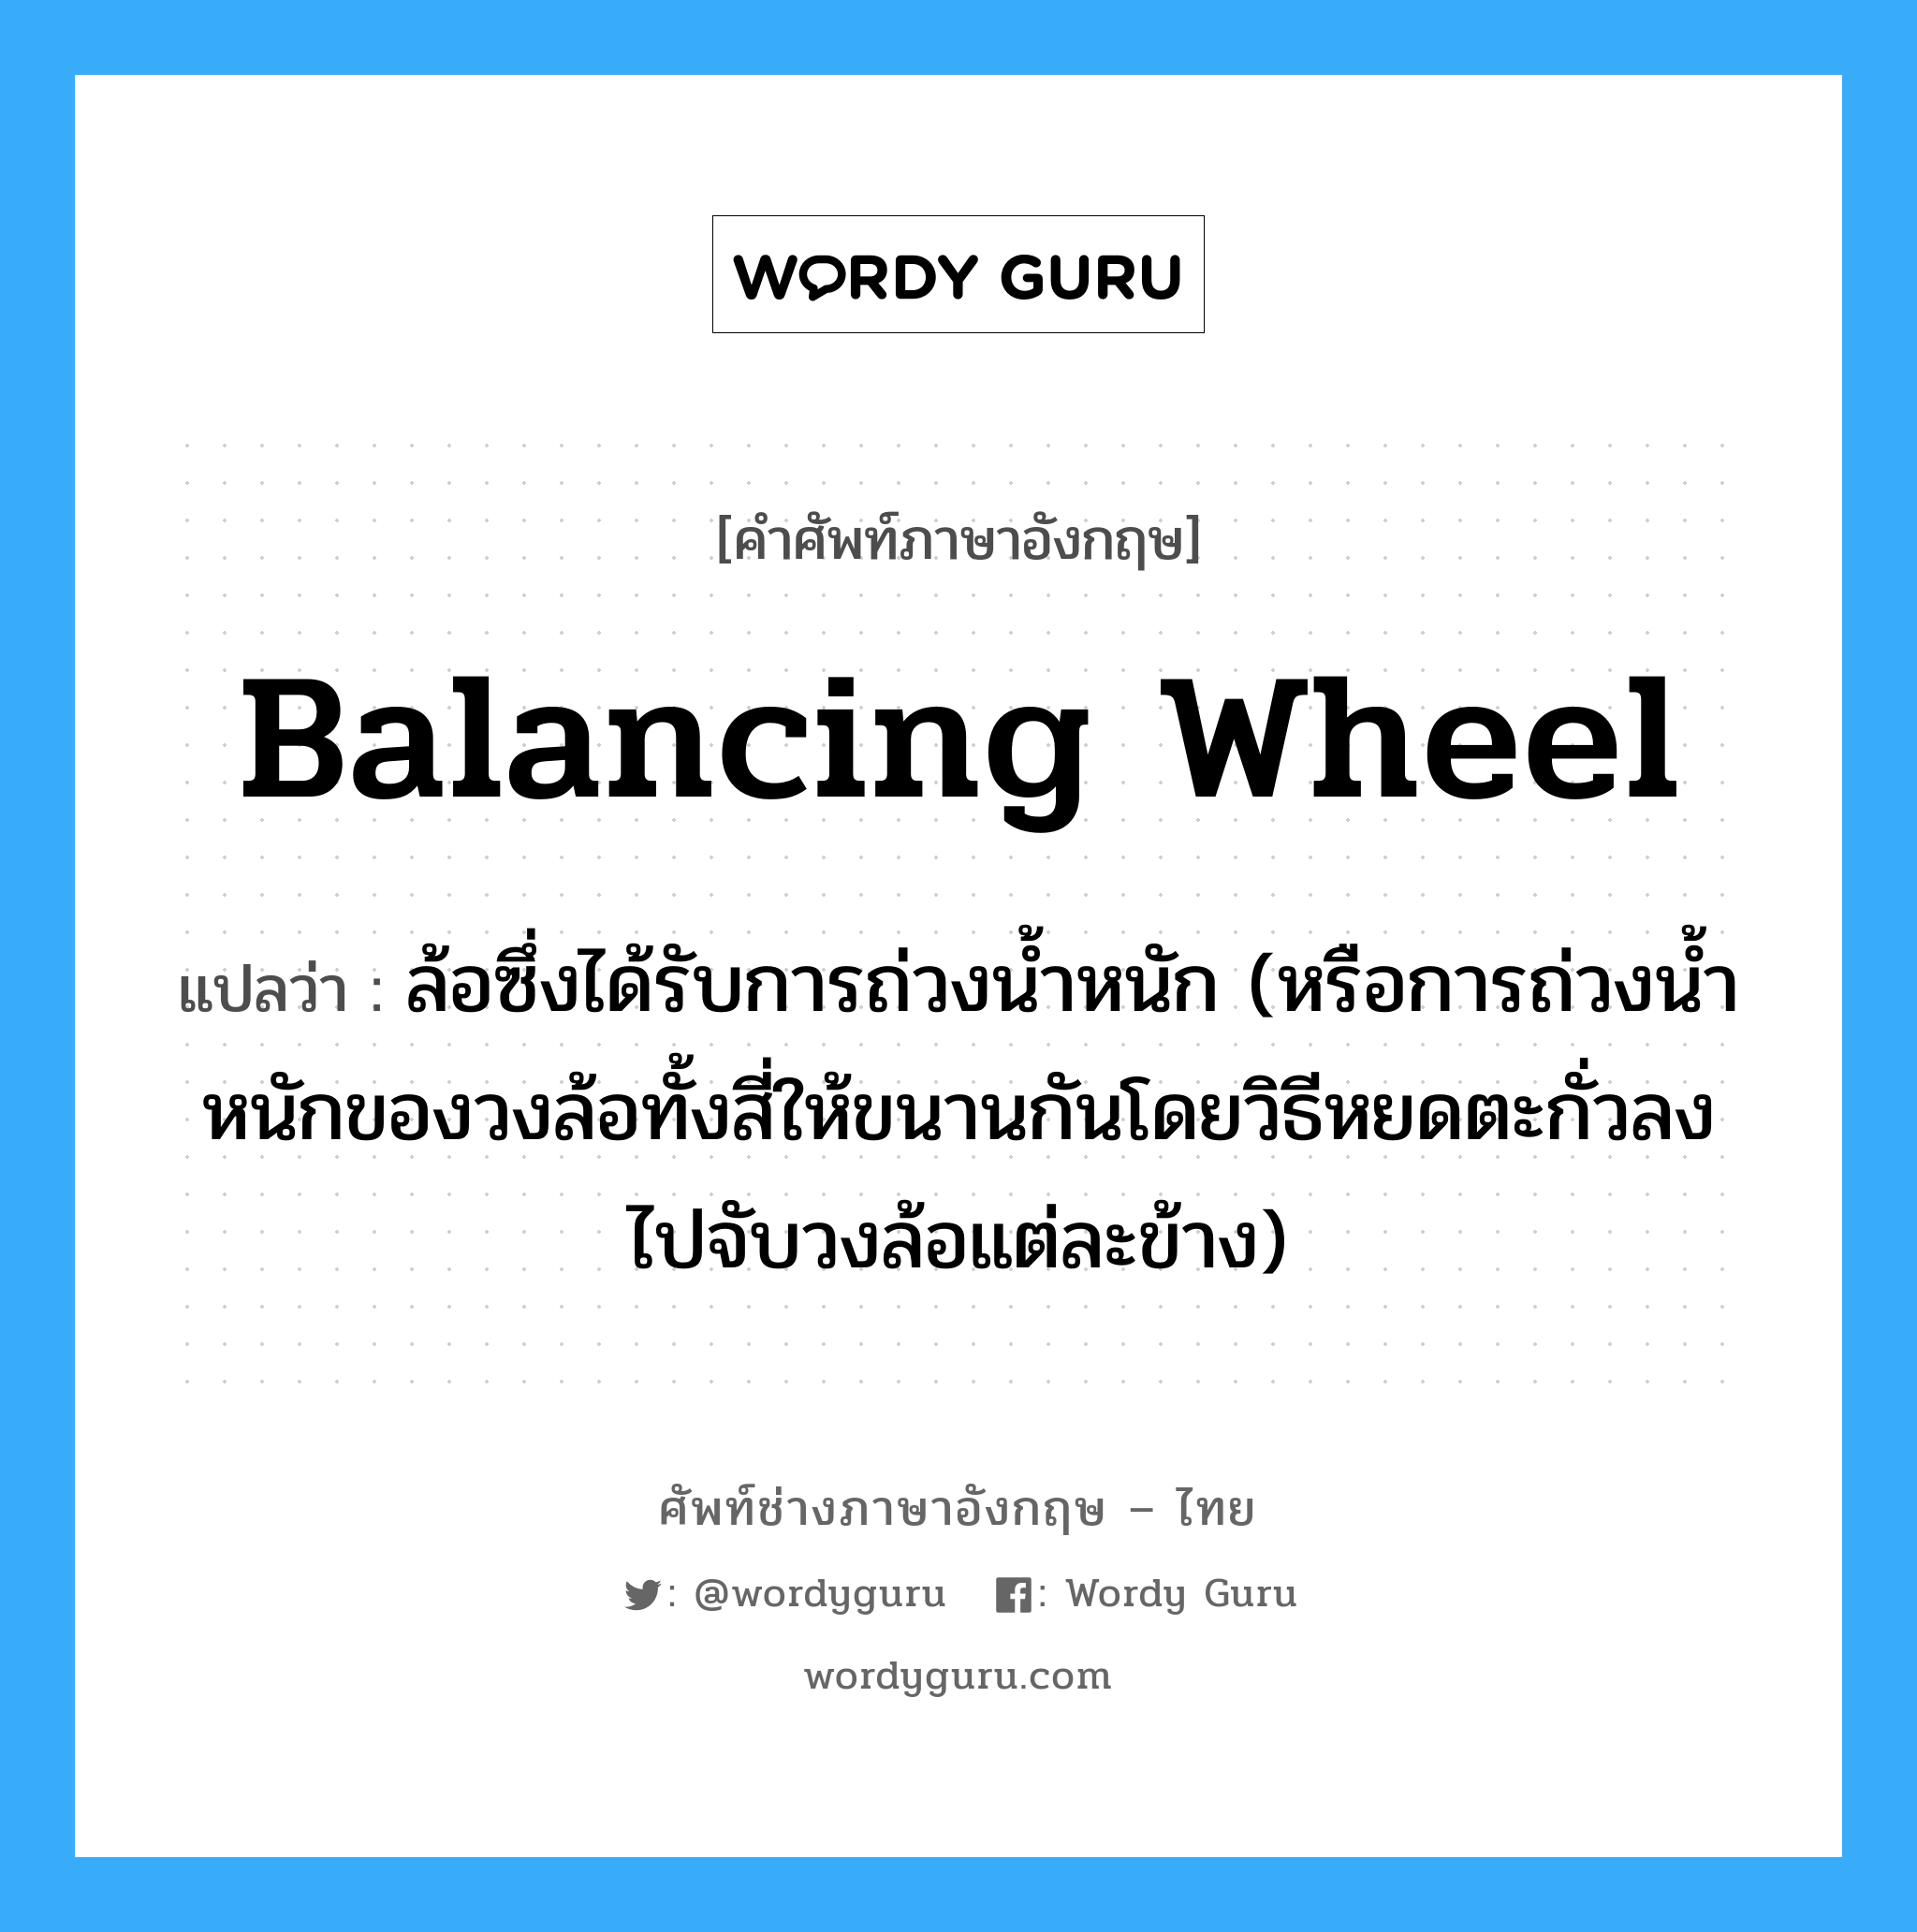 balancing wheel แปลว่า?, คำศัพท์ช่างภาษาอังกฤษ - ไทย balancing wheel คำศัพท์ภาษาอังกฤษ balancing wheel แปลว่า ล้อซึ่งได้รับการถ่วงน้ำหนัก (หรือการถ่วงน้ำหนักของวงล้อทั้งสี่ให้ขนานกันโดยวิธีหยดตะกั่วลงไปจับวงล้อแต่ละข้าง)